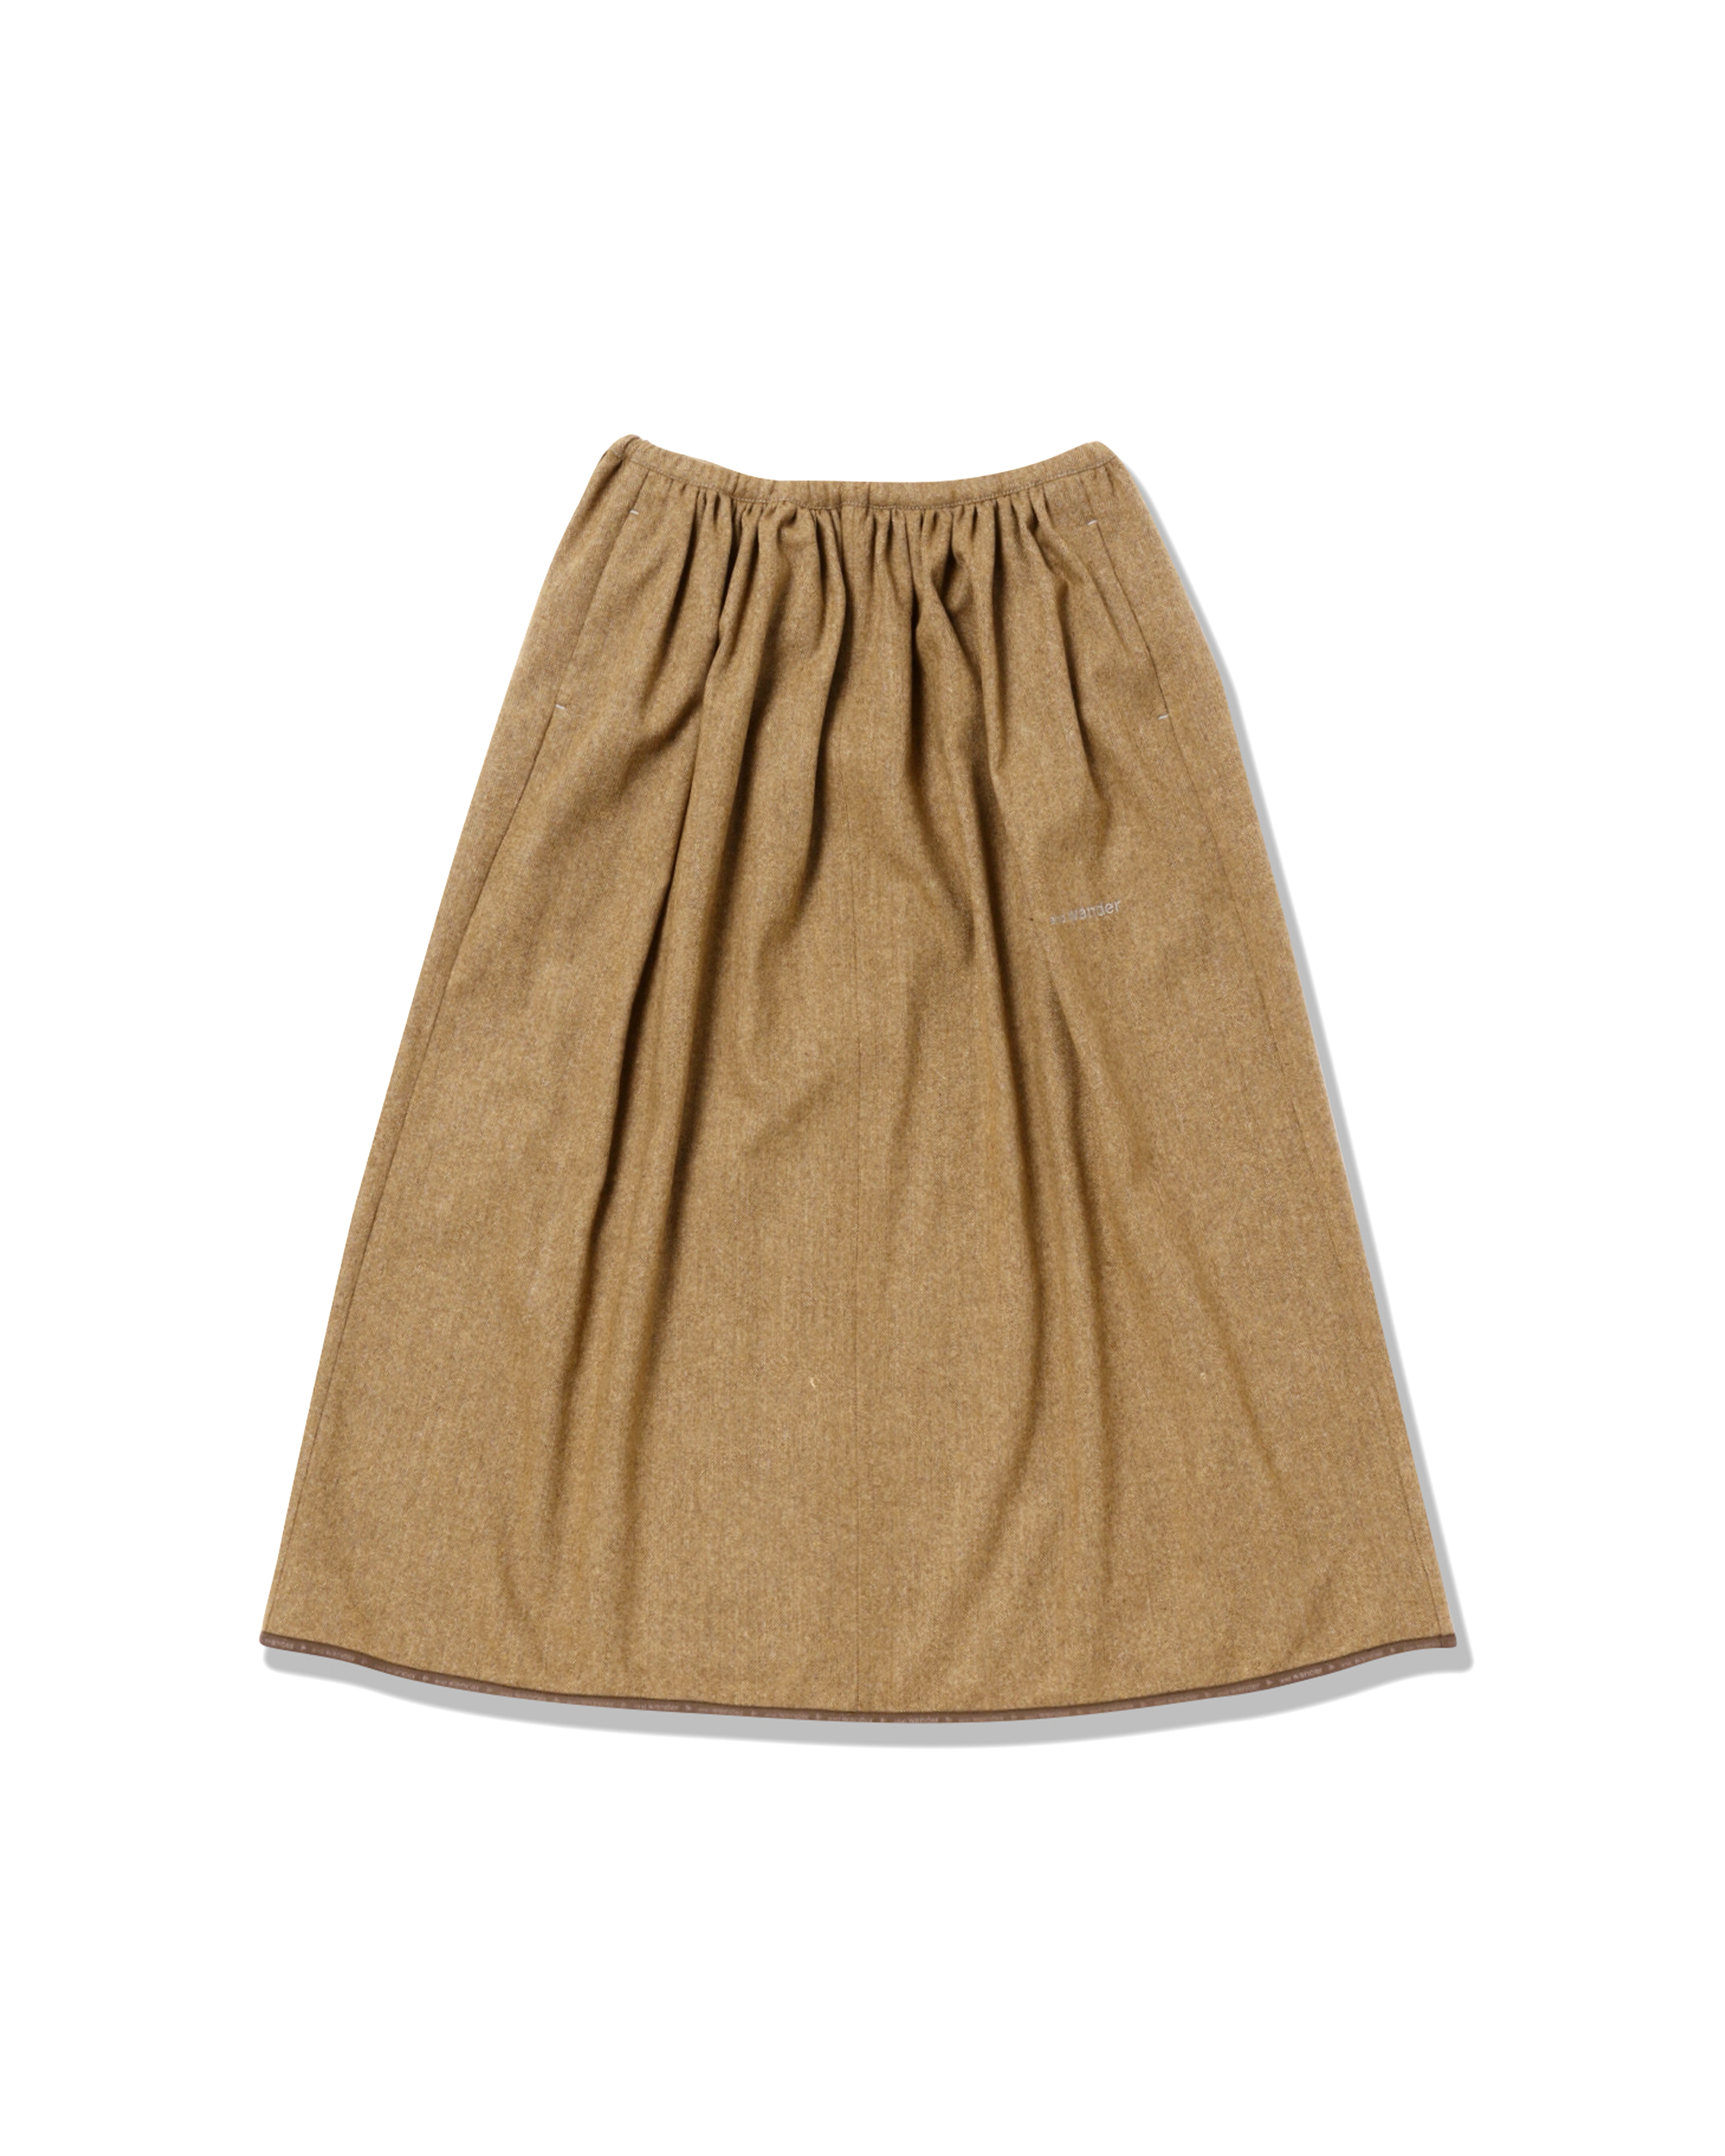 REWOOL Tweed Skirt - Beige